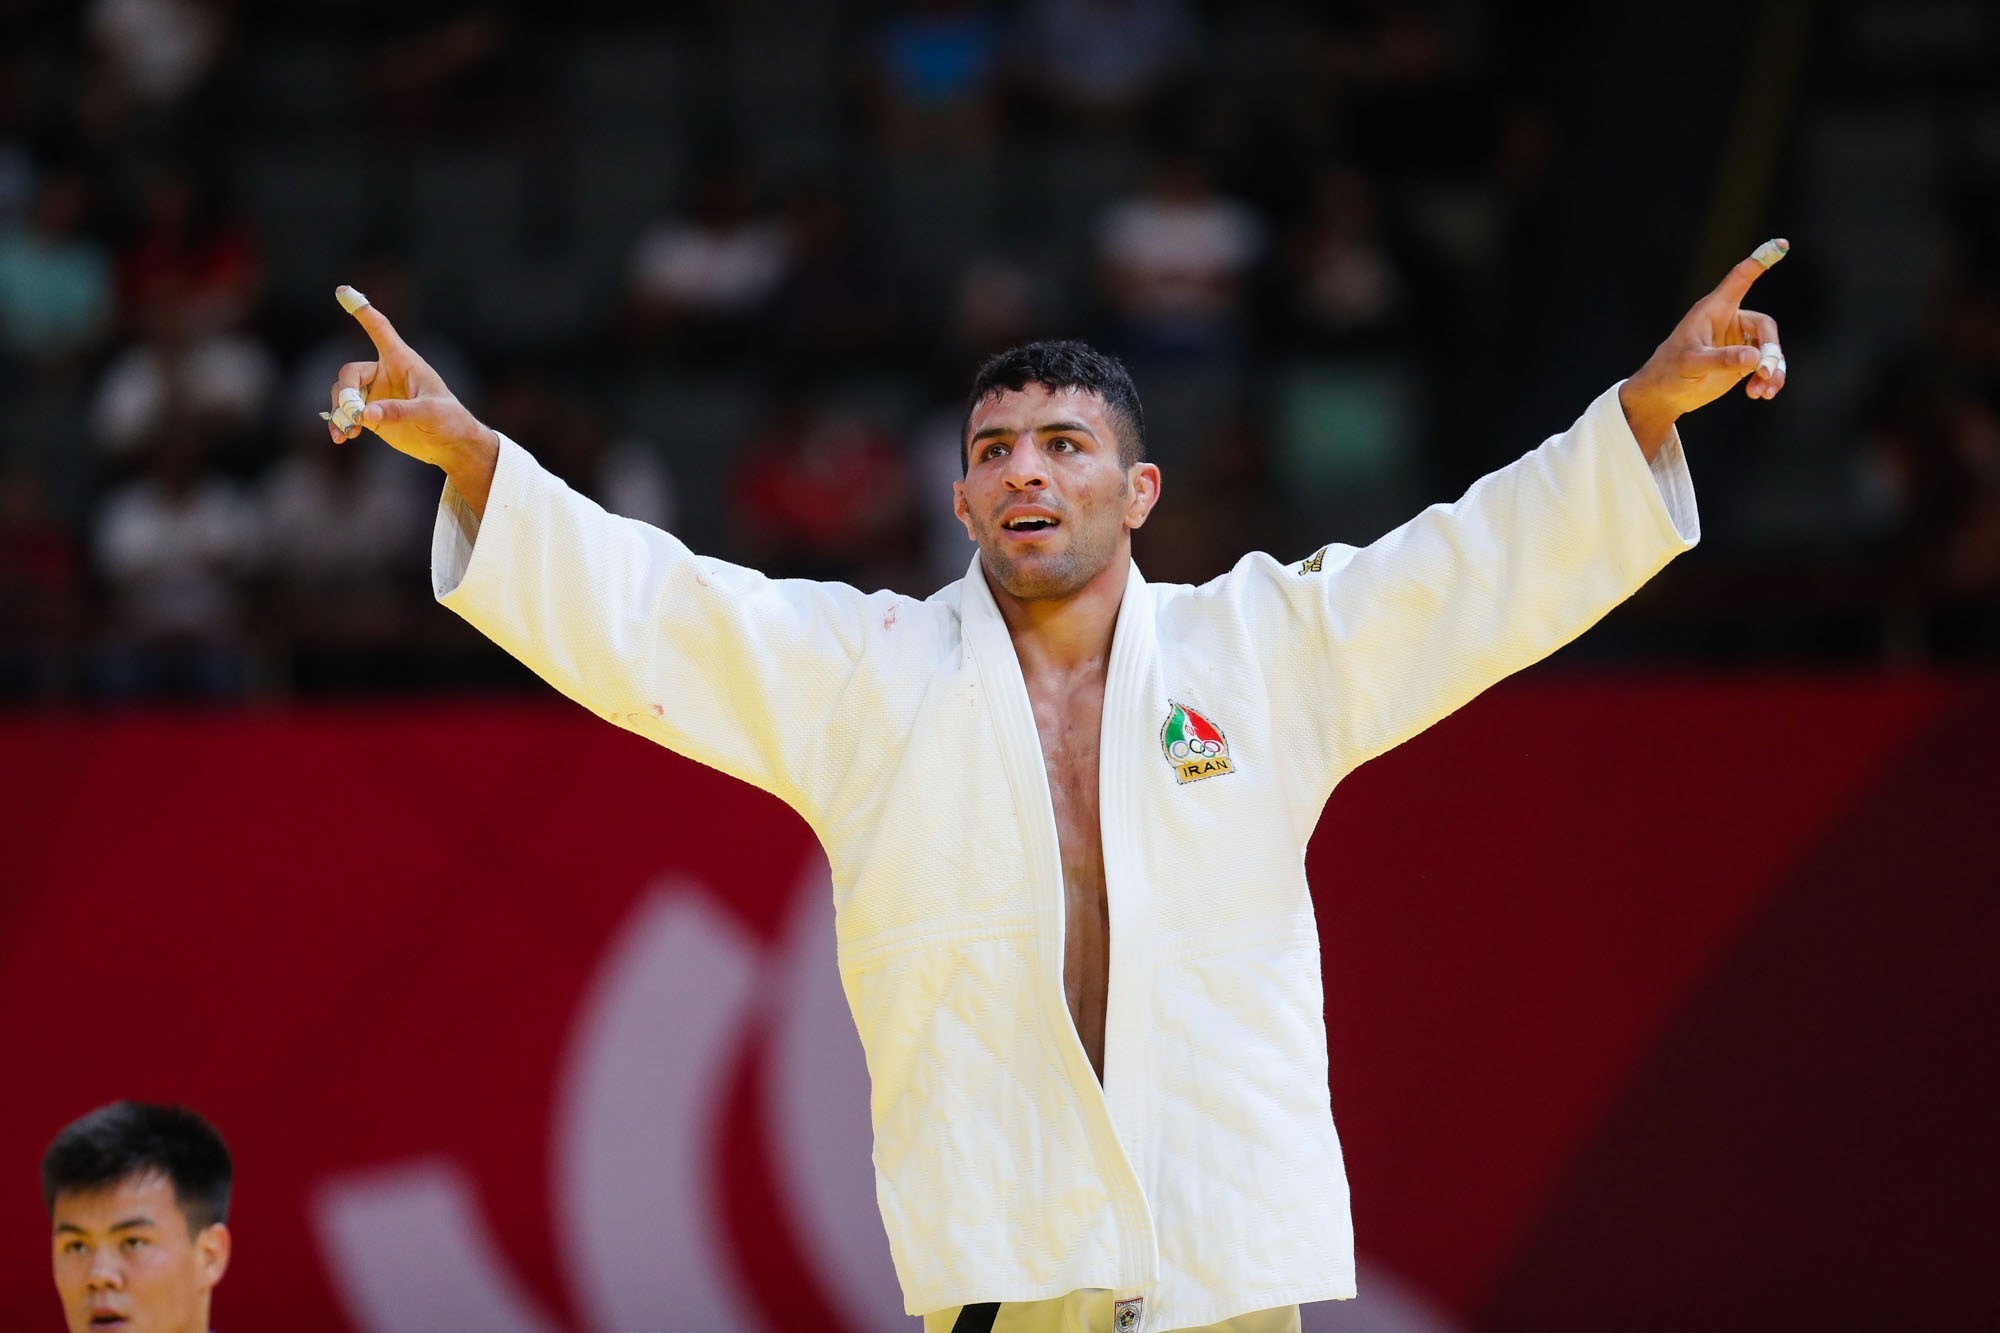 Iranian representative wins gold medal at 2018 World Judo Championships